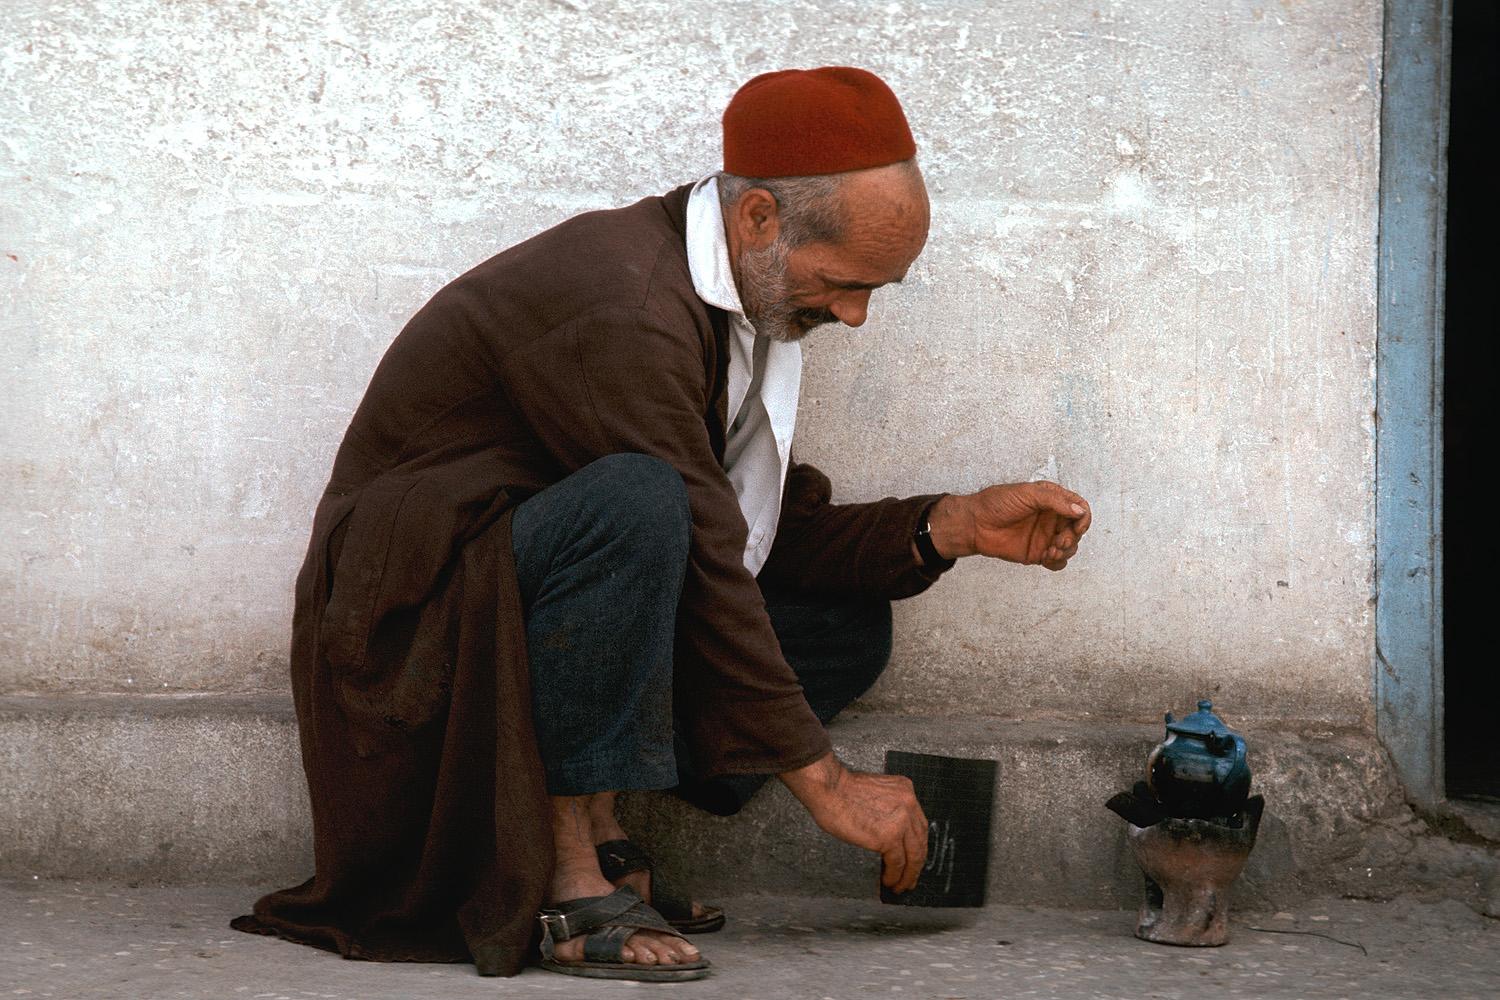 bill-hocker-making-tea-tunisia-1972